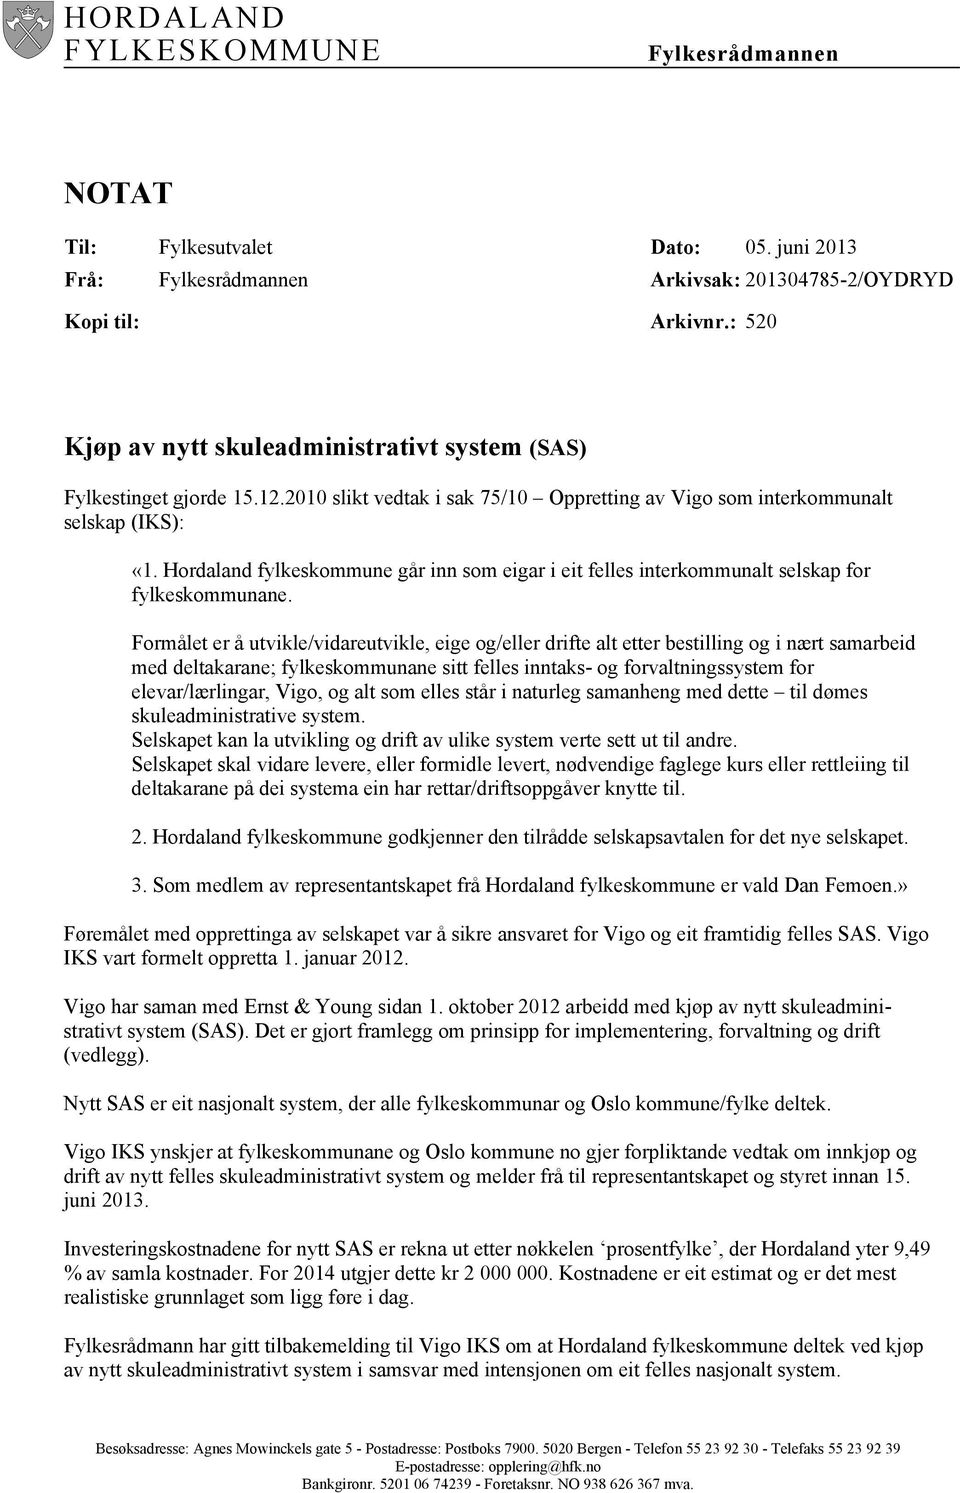 Hordaland fylkeskommune går inn som eigar i eit felles interkommunalt selskap for fylkeskommunane.